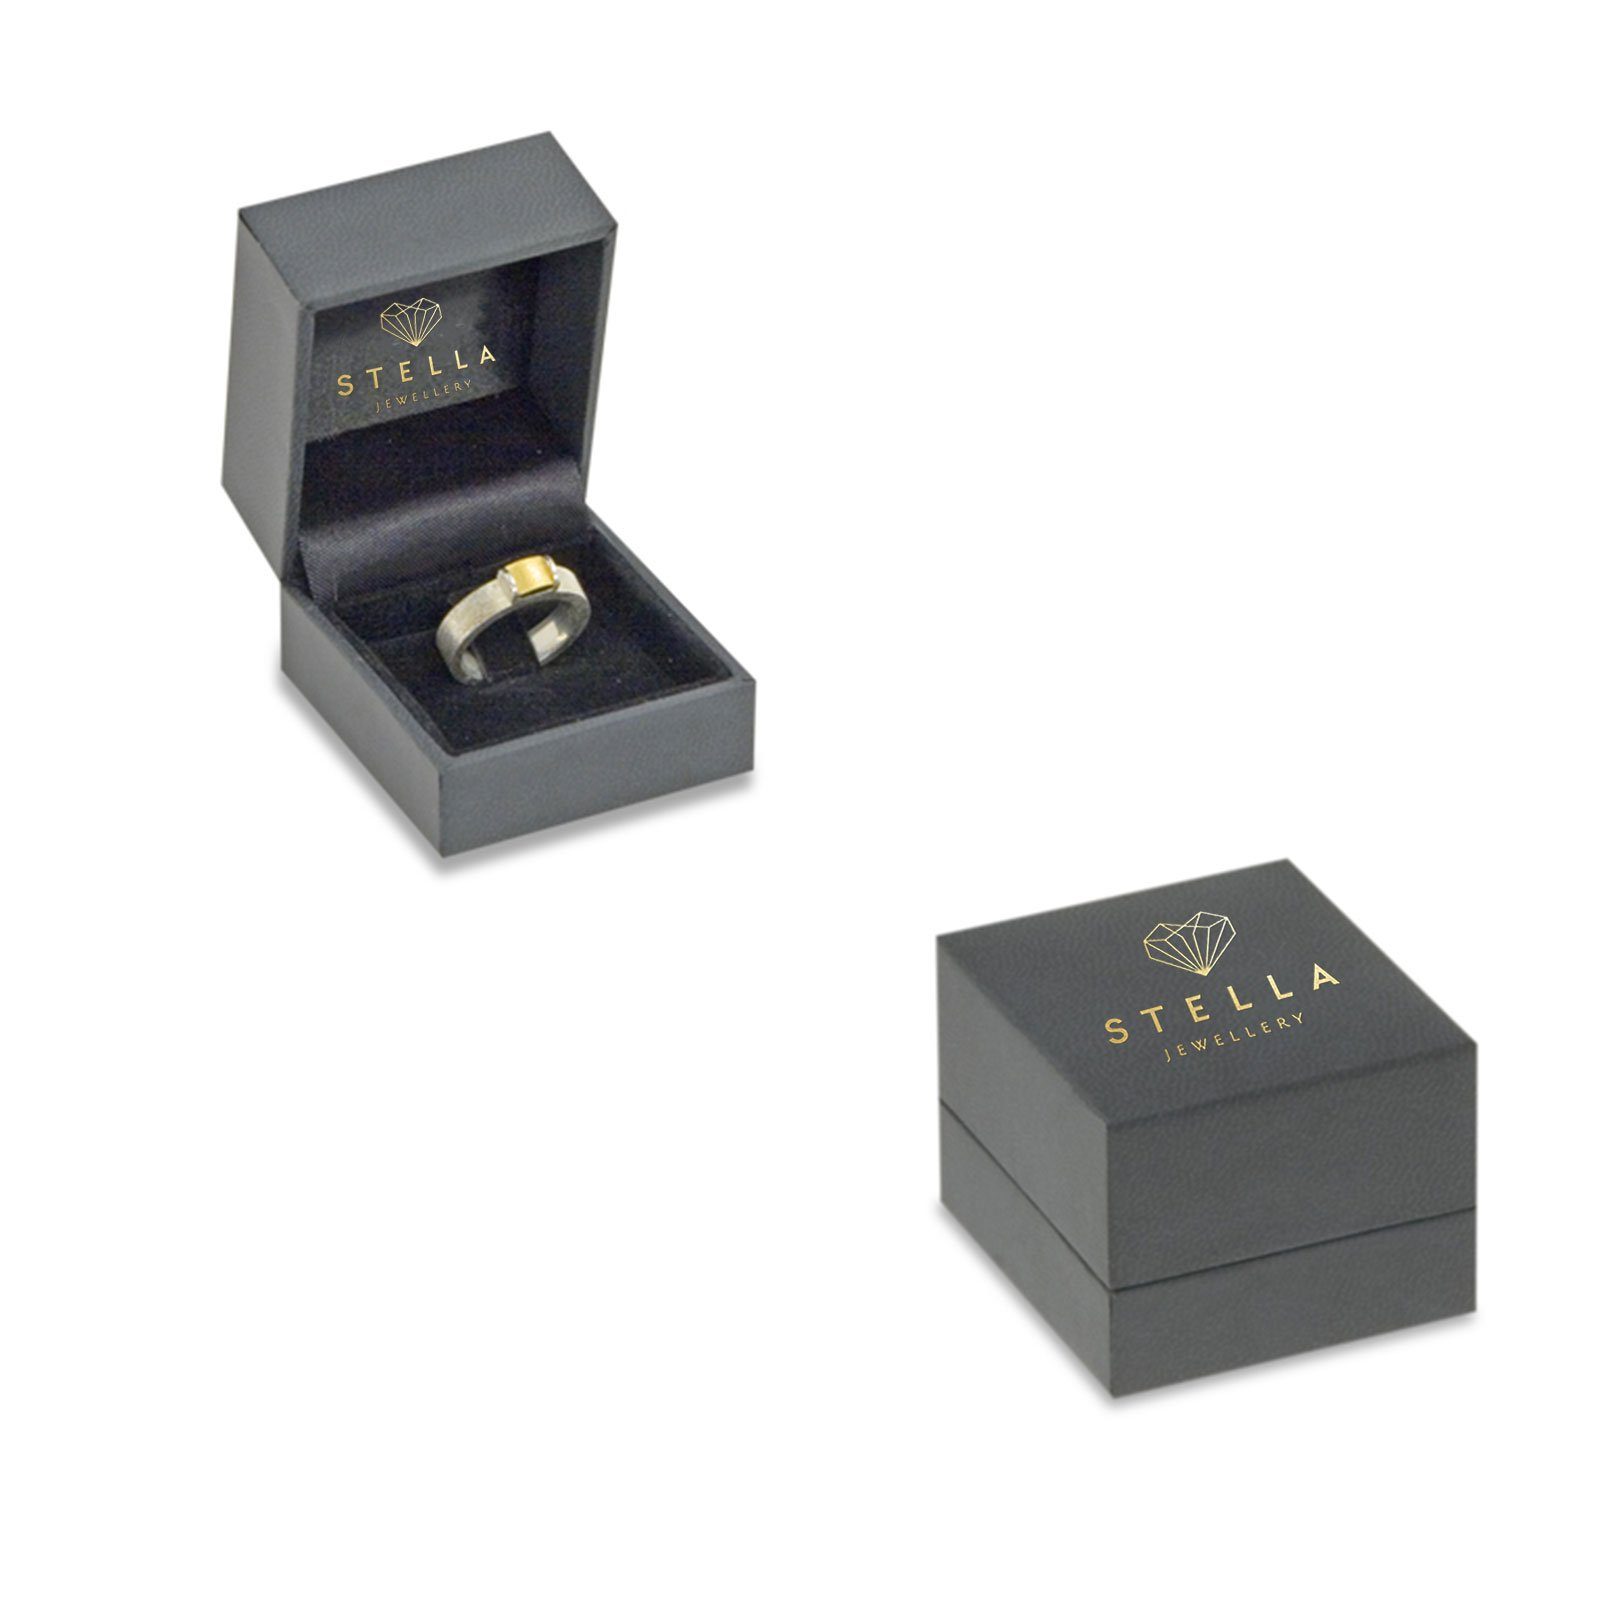 Herren Schmuck Stella-Jewellery Verlobungsring 585er Verlobungsring Weißgold 0,25 ct. (inkl. Etui), mit Brillant 0,10ct. - Polie